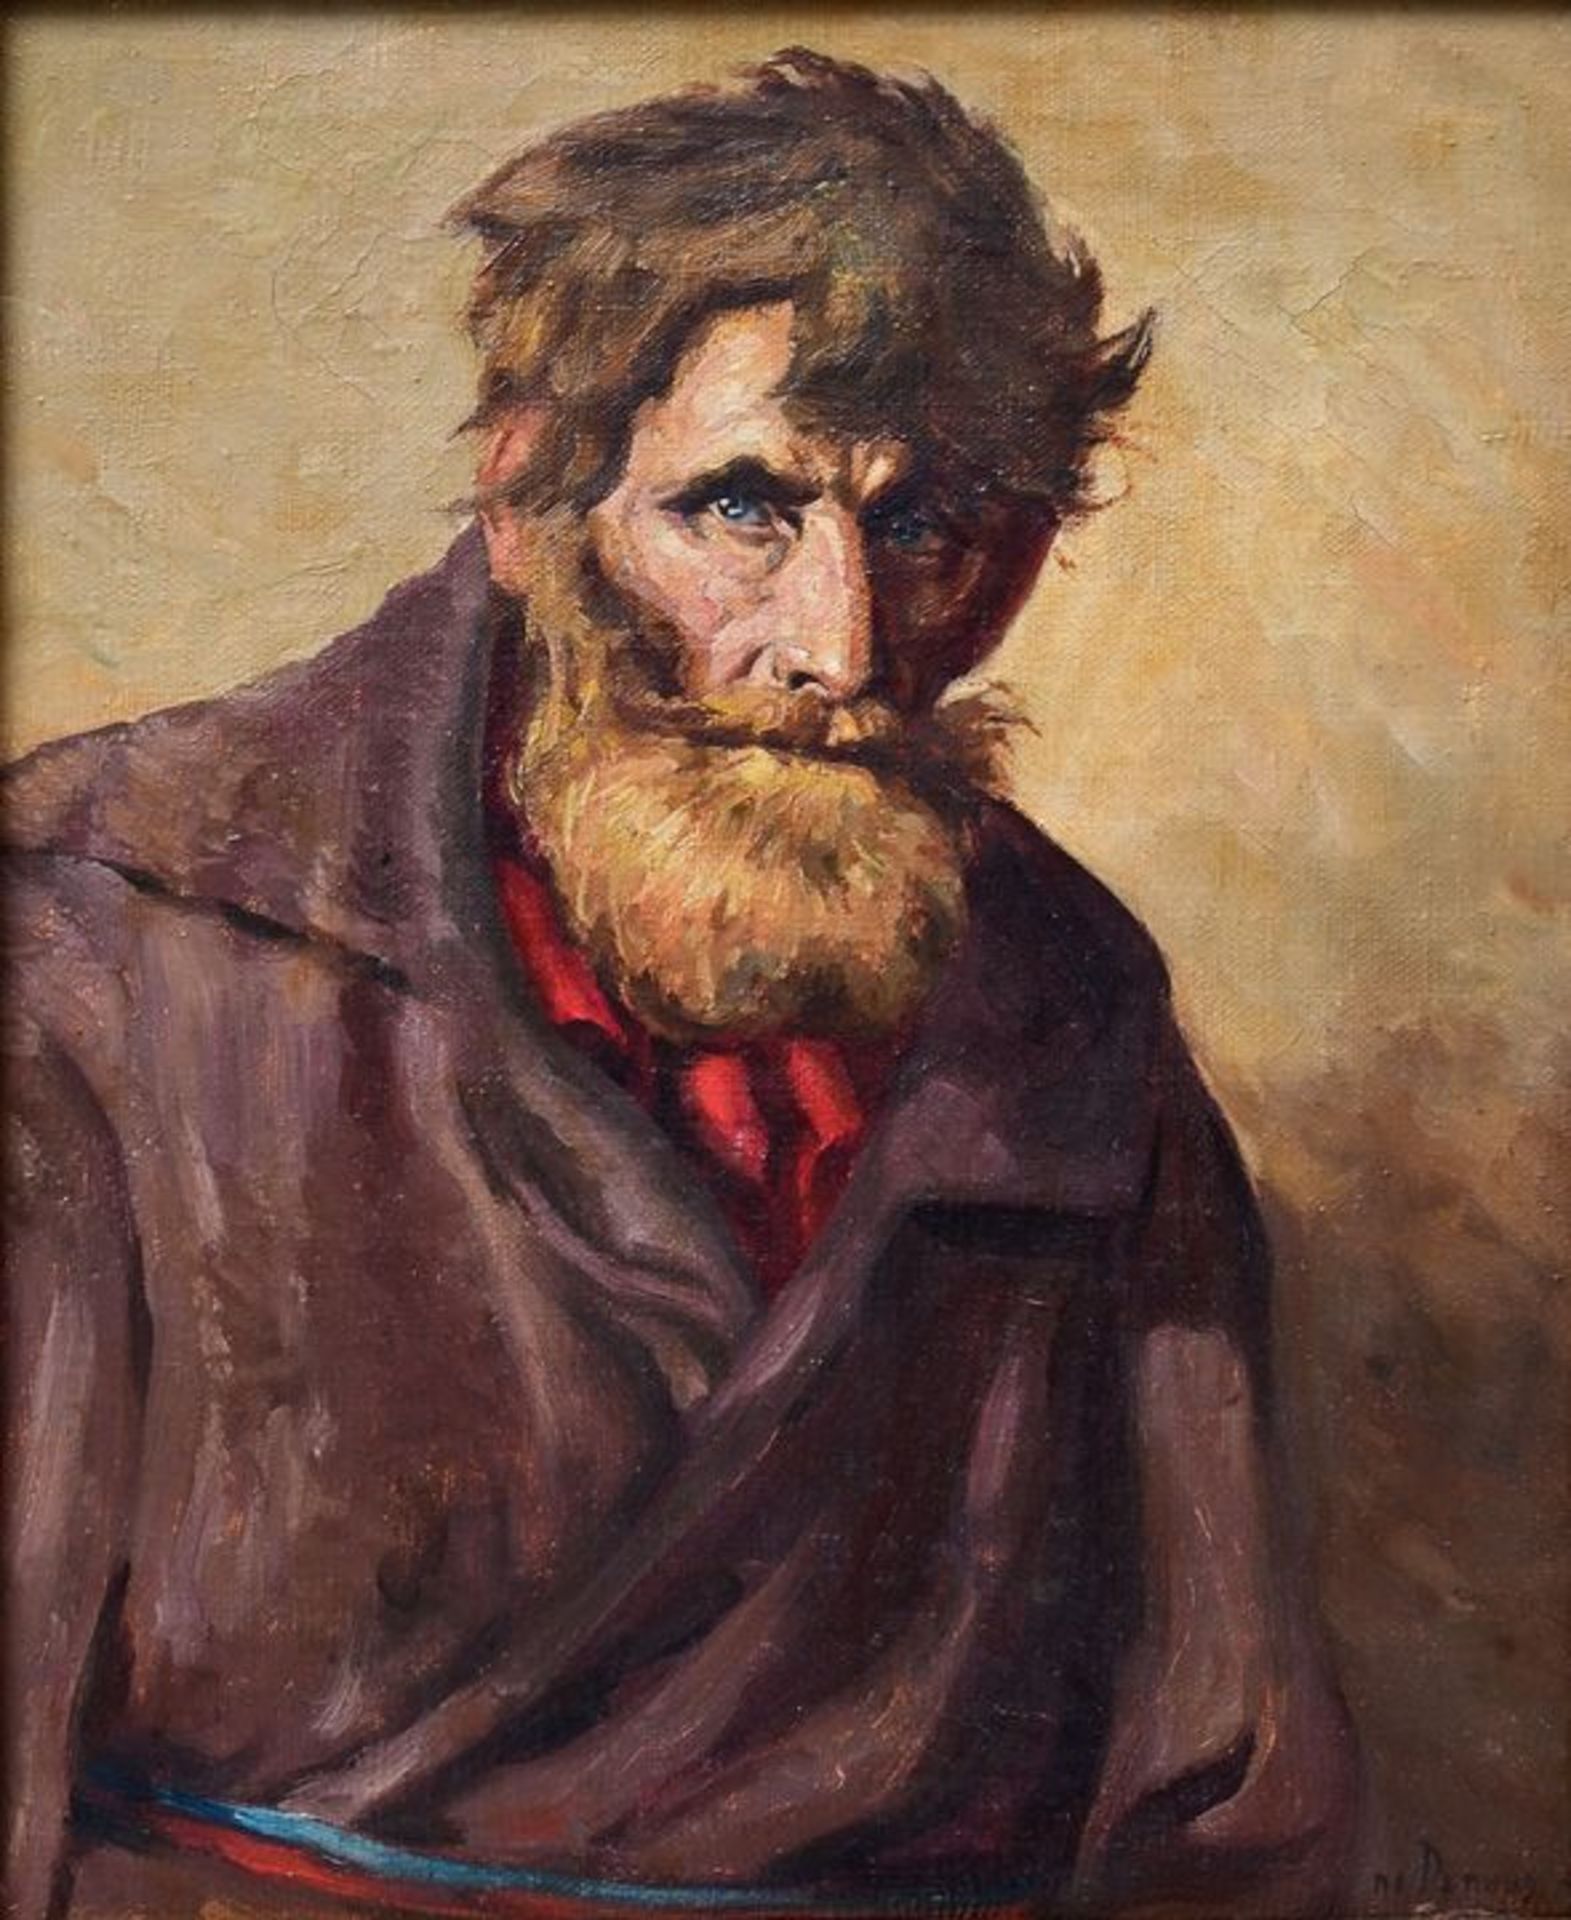 unbekannter Porträtist, Fischer / unknown portraitist, fisherman